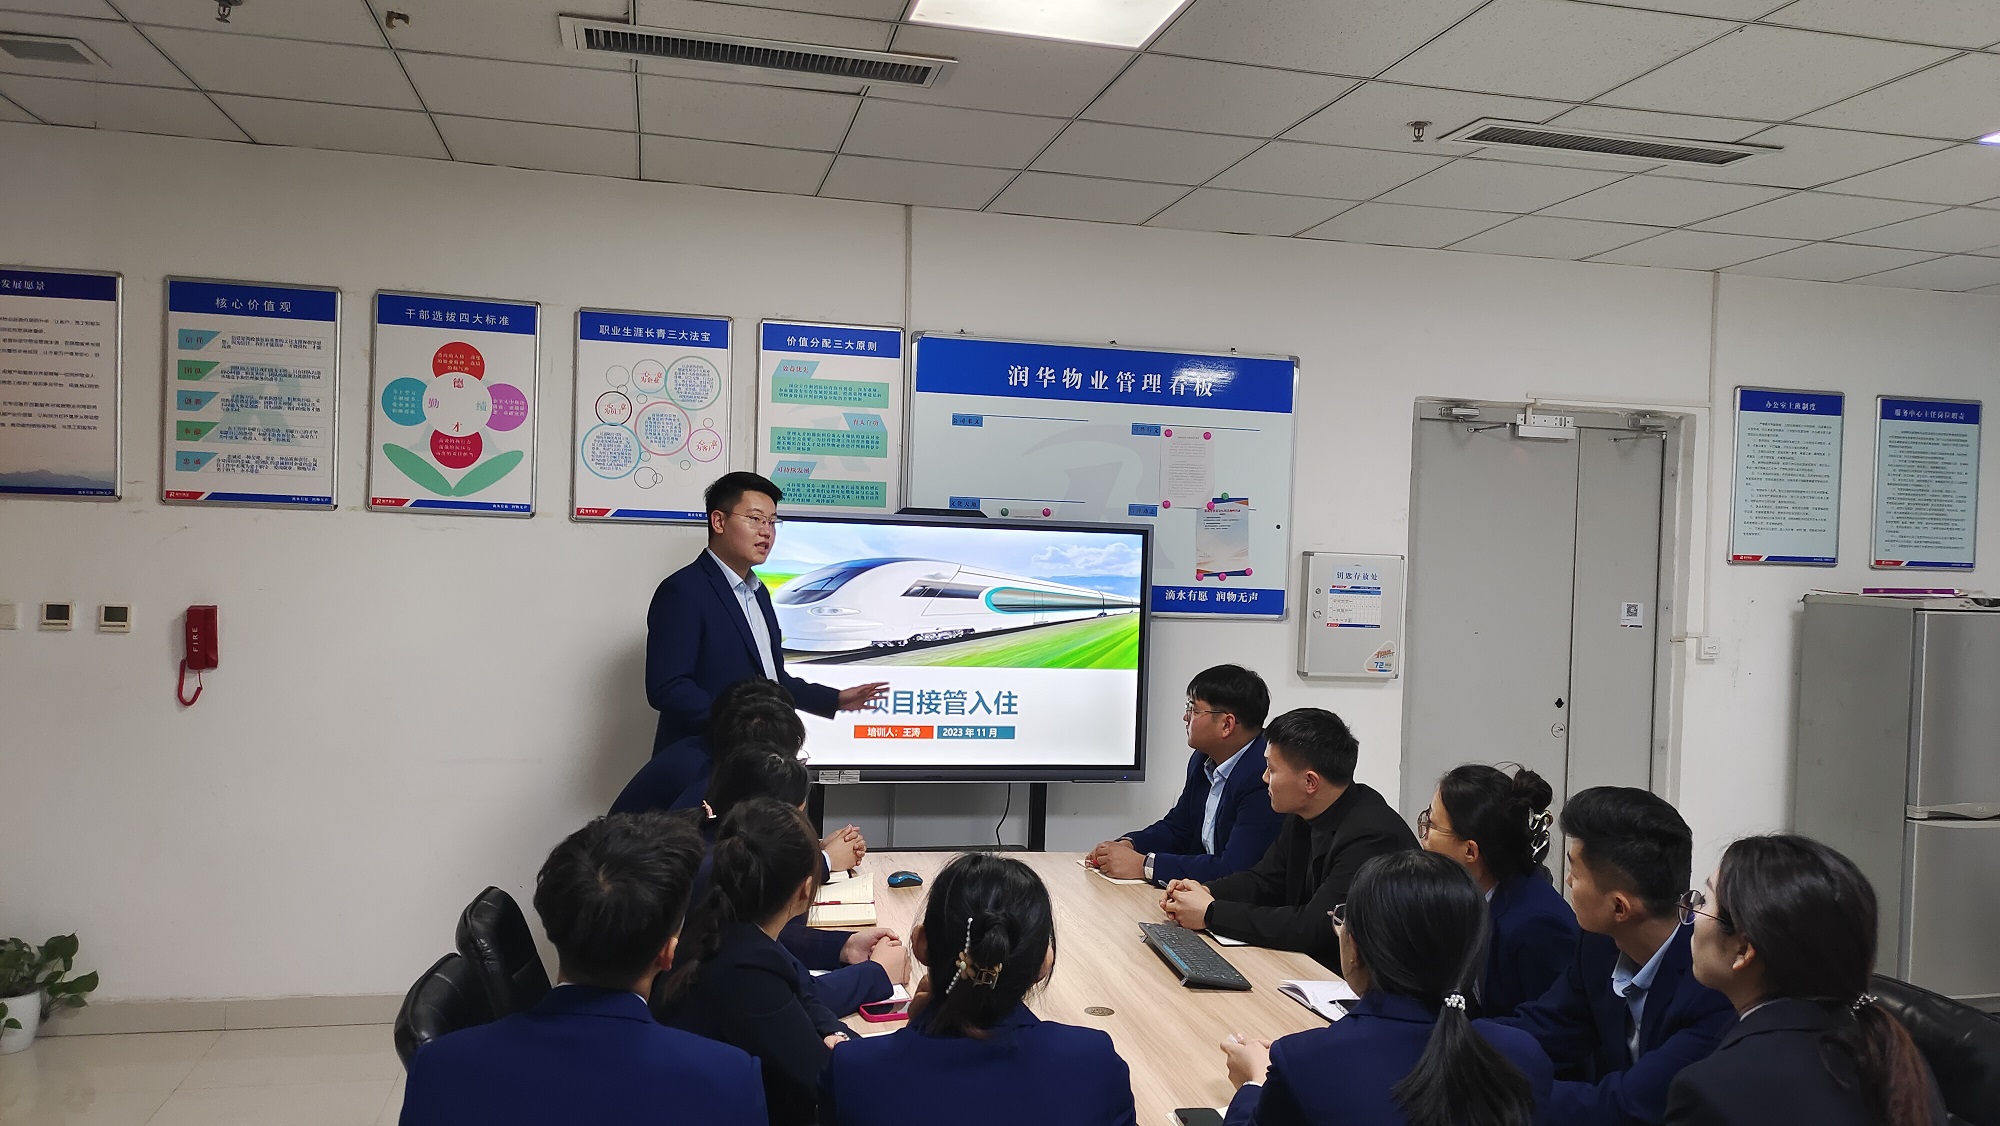 潤華物業高鐵青島分公司組織開展第四期“菁英計劃”儲備人員訓練營